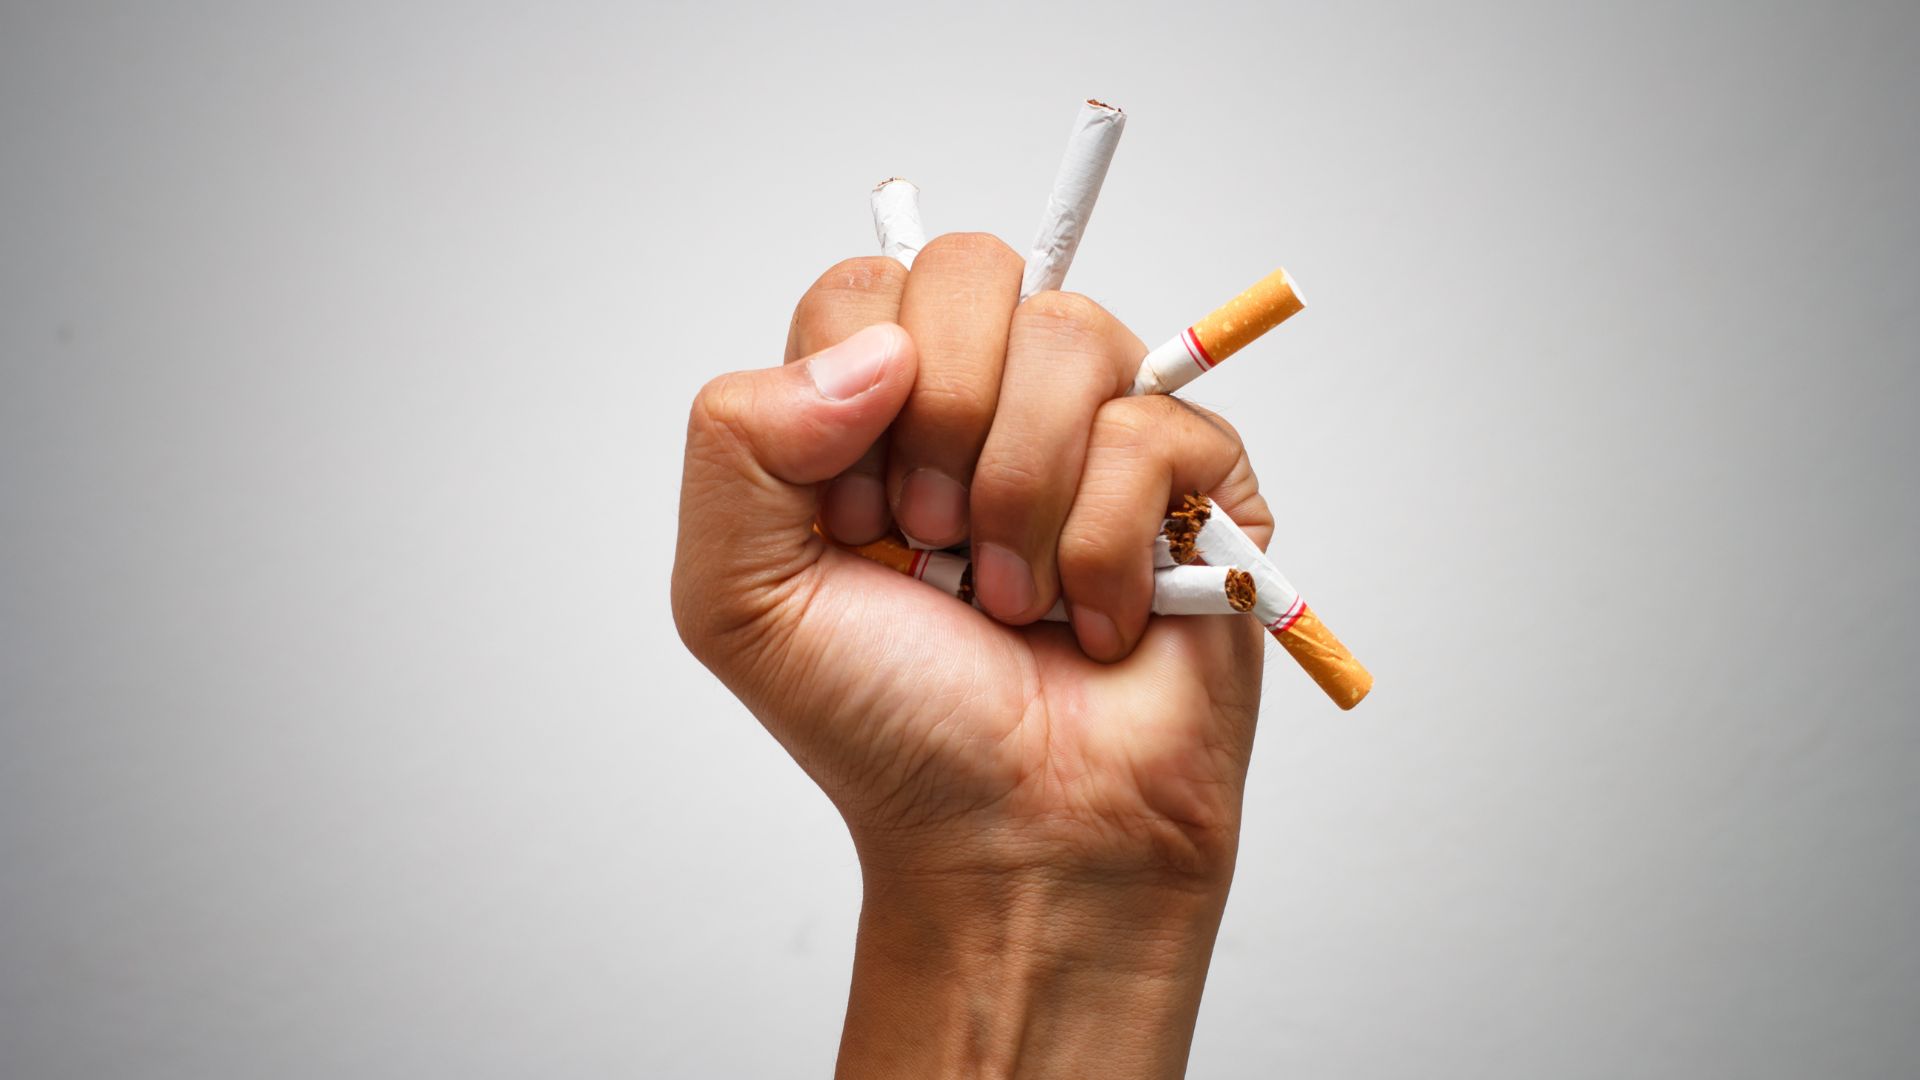 Mois sans tabac: 5 très bonnes raisons d'arrêter de fumer!